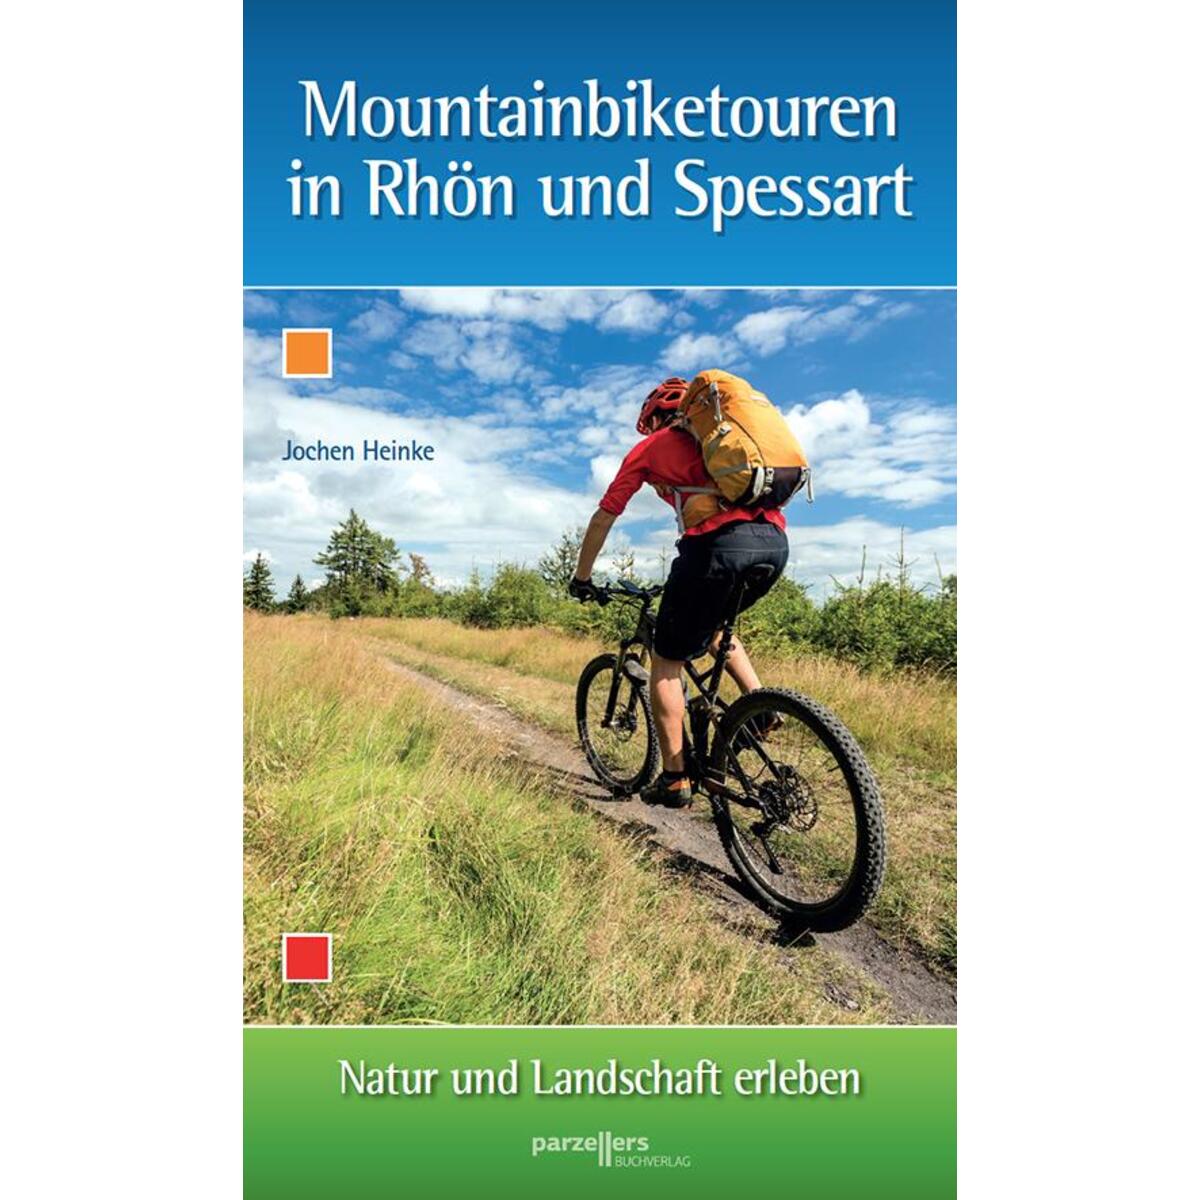 Montainbiketouren in Rhön und Spessart von Parzellers Buchverlag